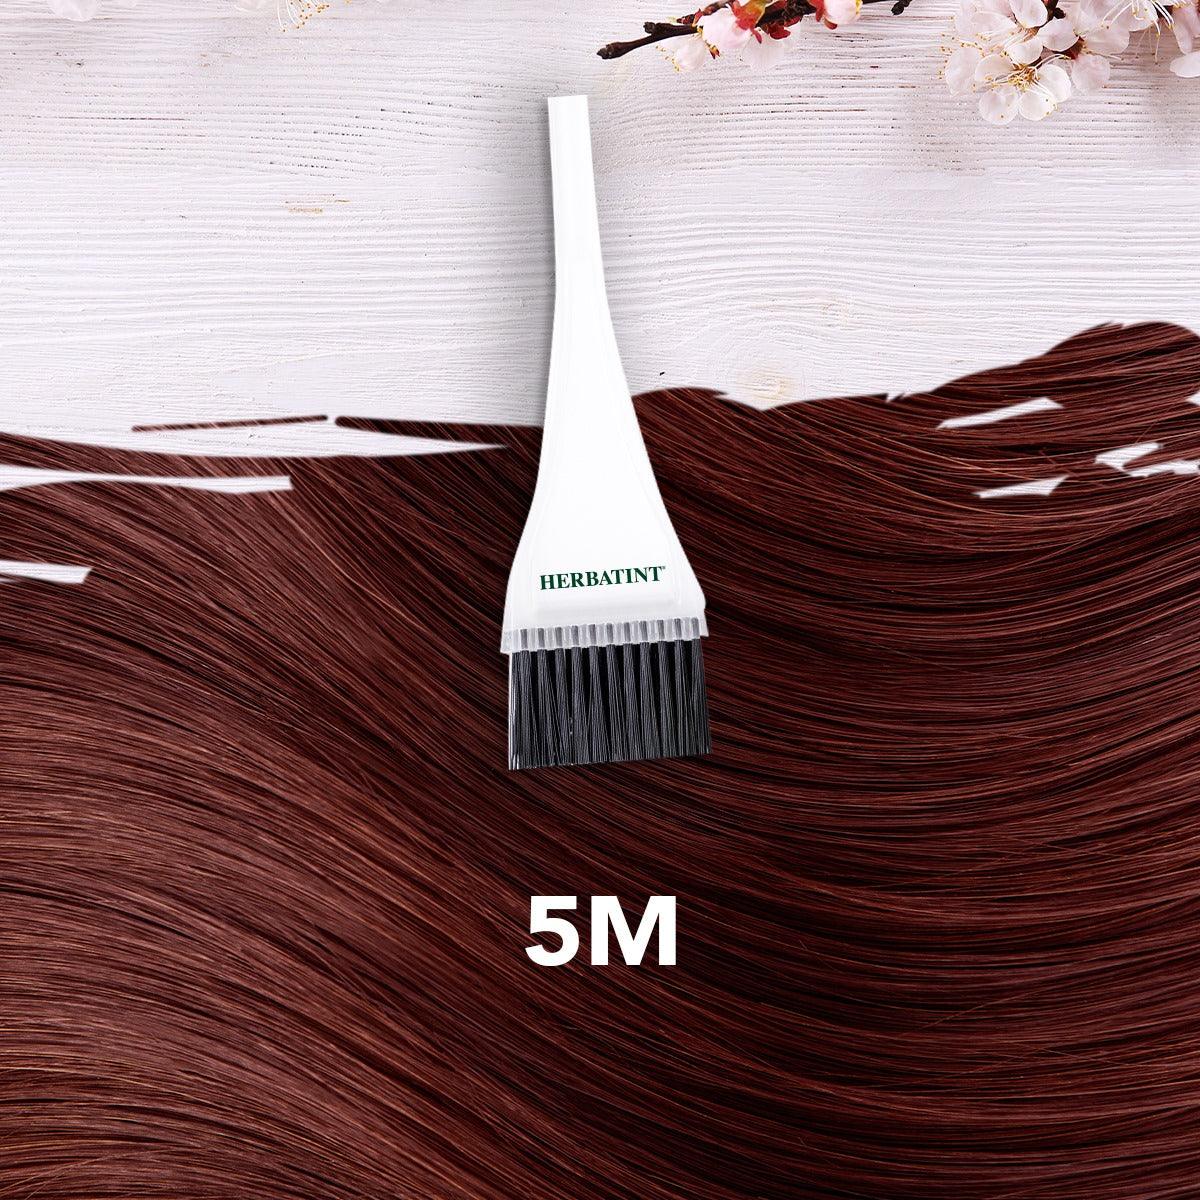 צבע טבעי לשיער גוון מהגוני ערמוני בהיר 5M | הרבטינט - Herbatint - פריקפוא